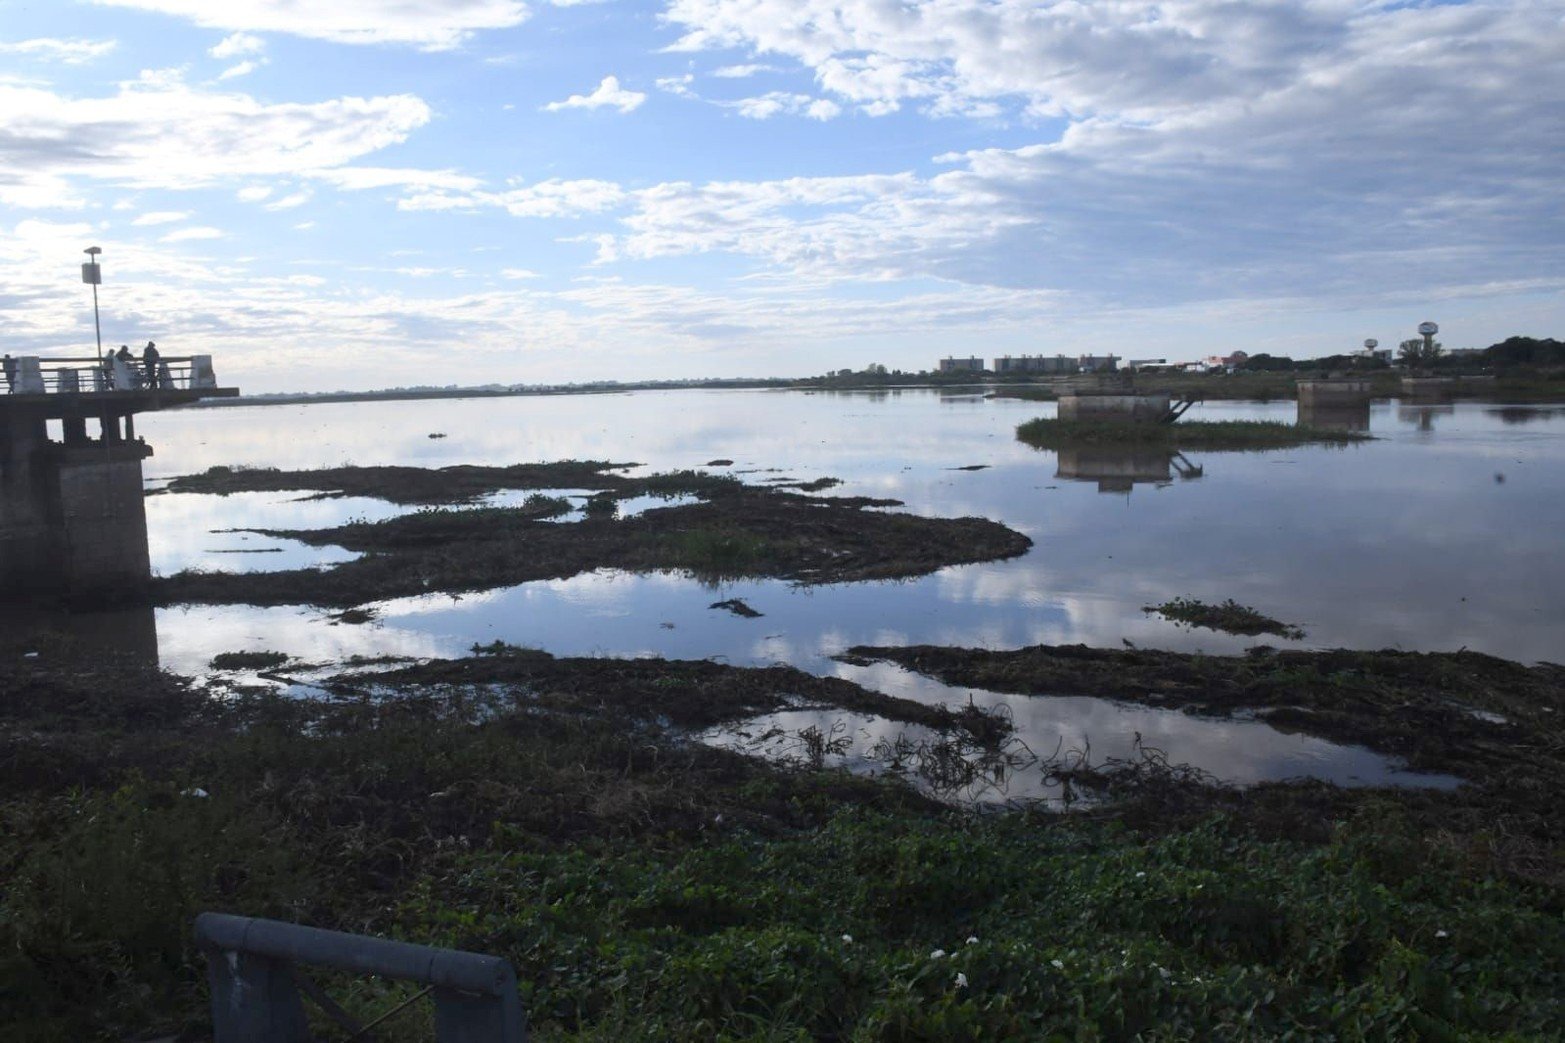 En las últimas 24 horas el río Paraná creció 12 centímetros en el puerto de Santa Fe. En el puerto de Santa Fe la altura es 3.32 metros.